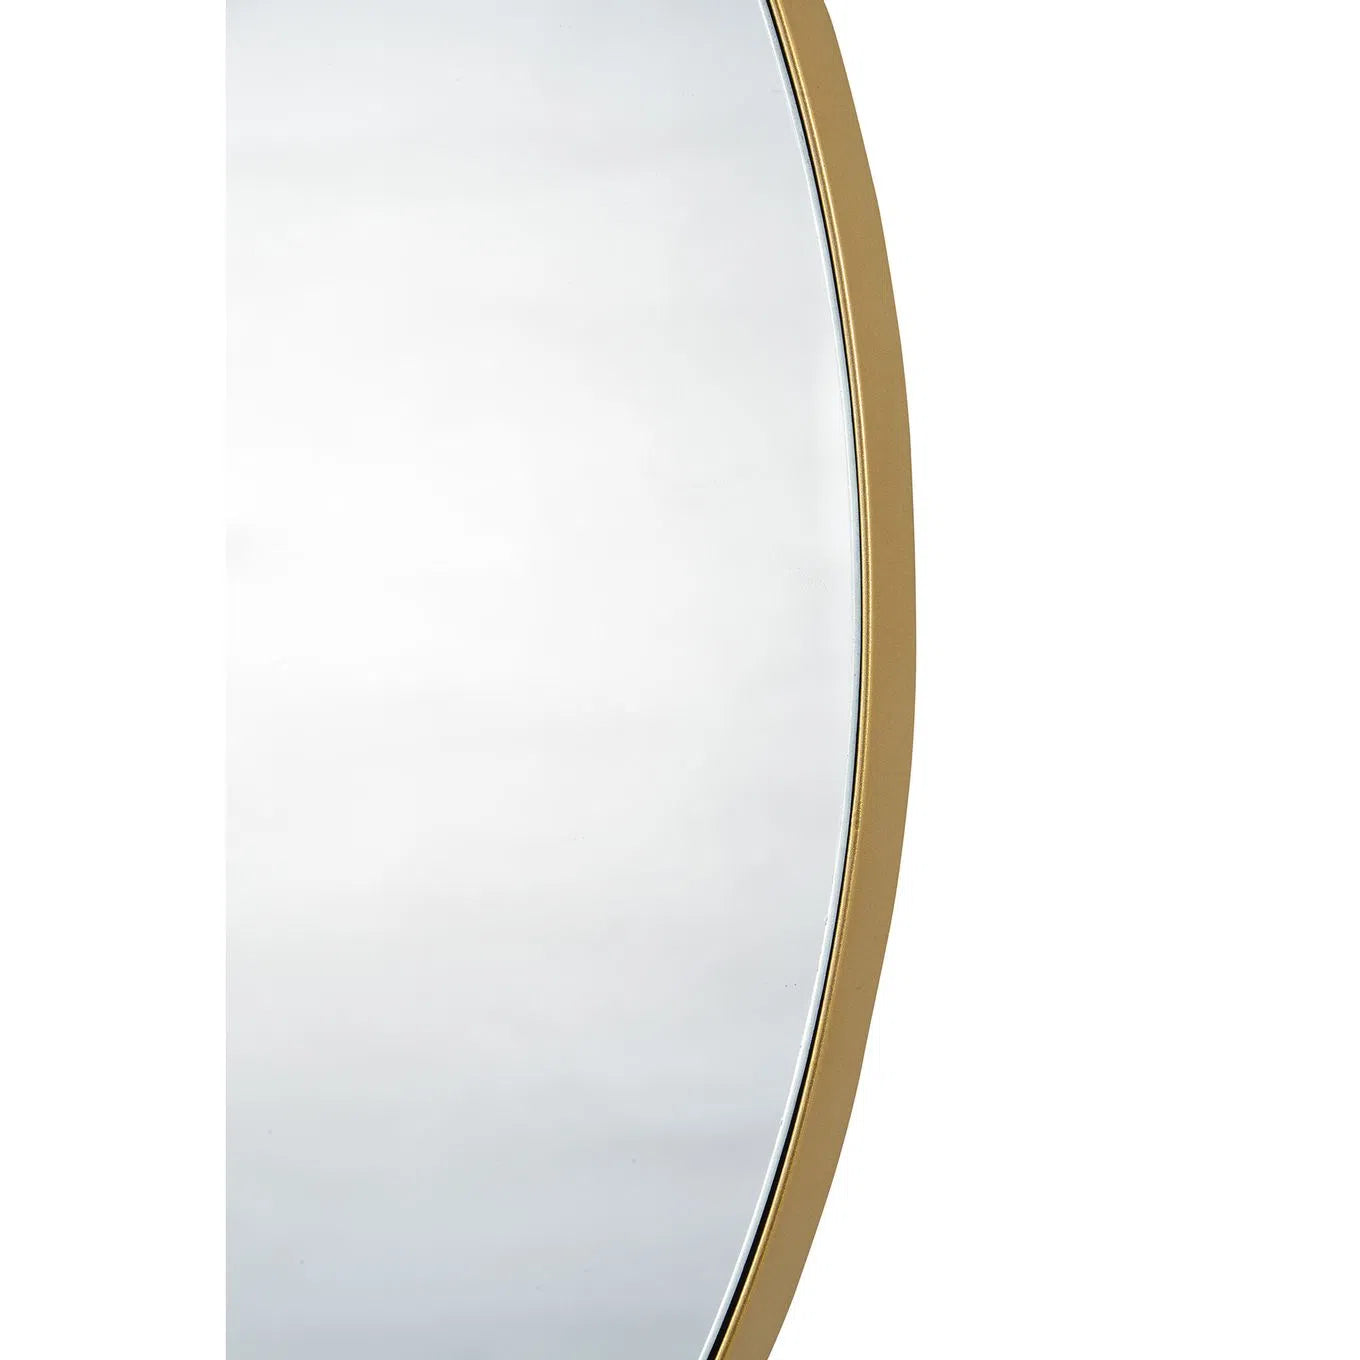 Withham 24" Gold Round Mirror